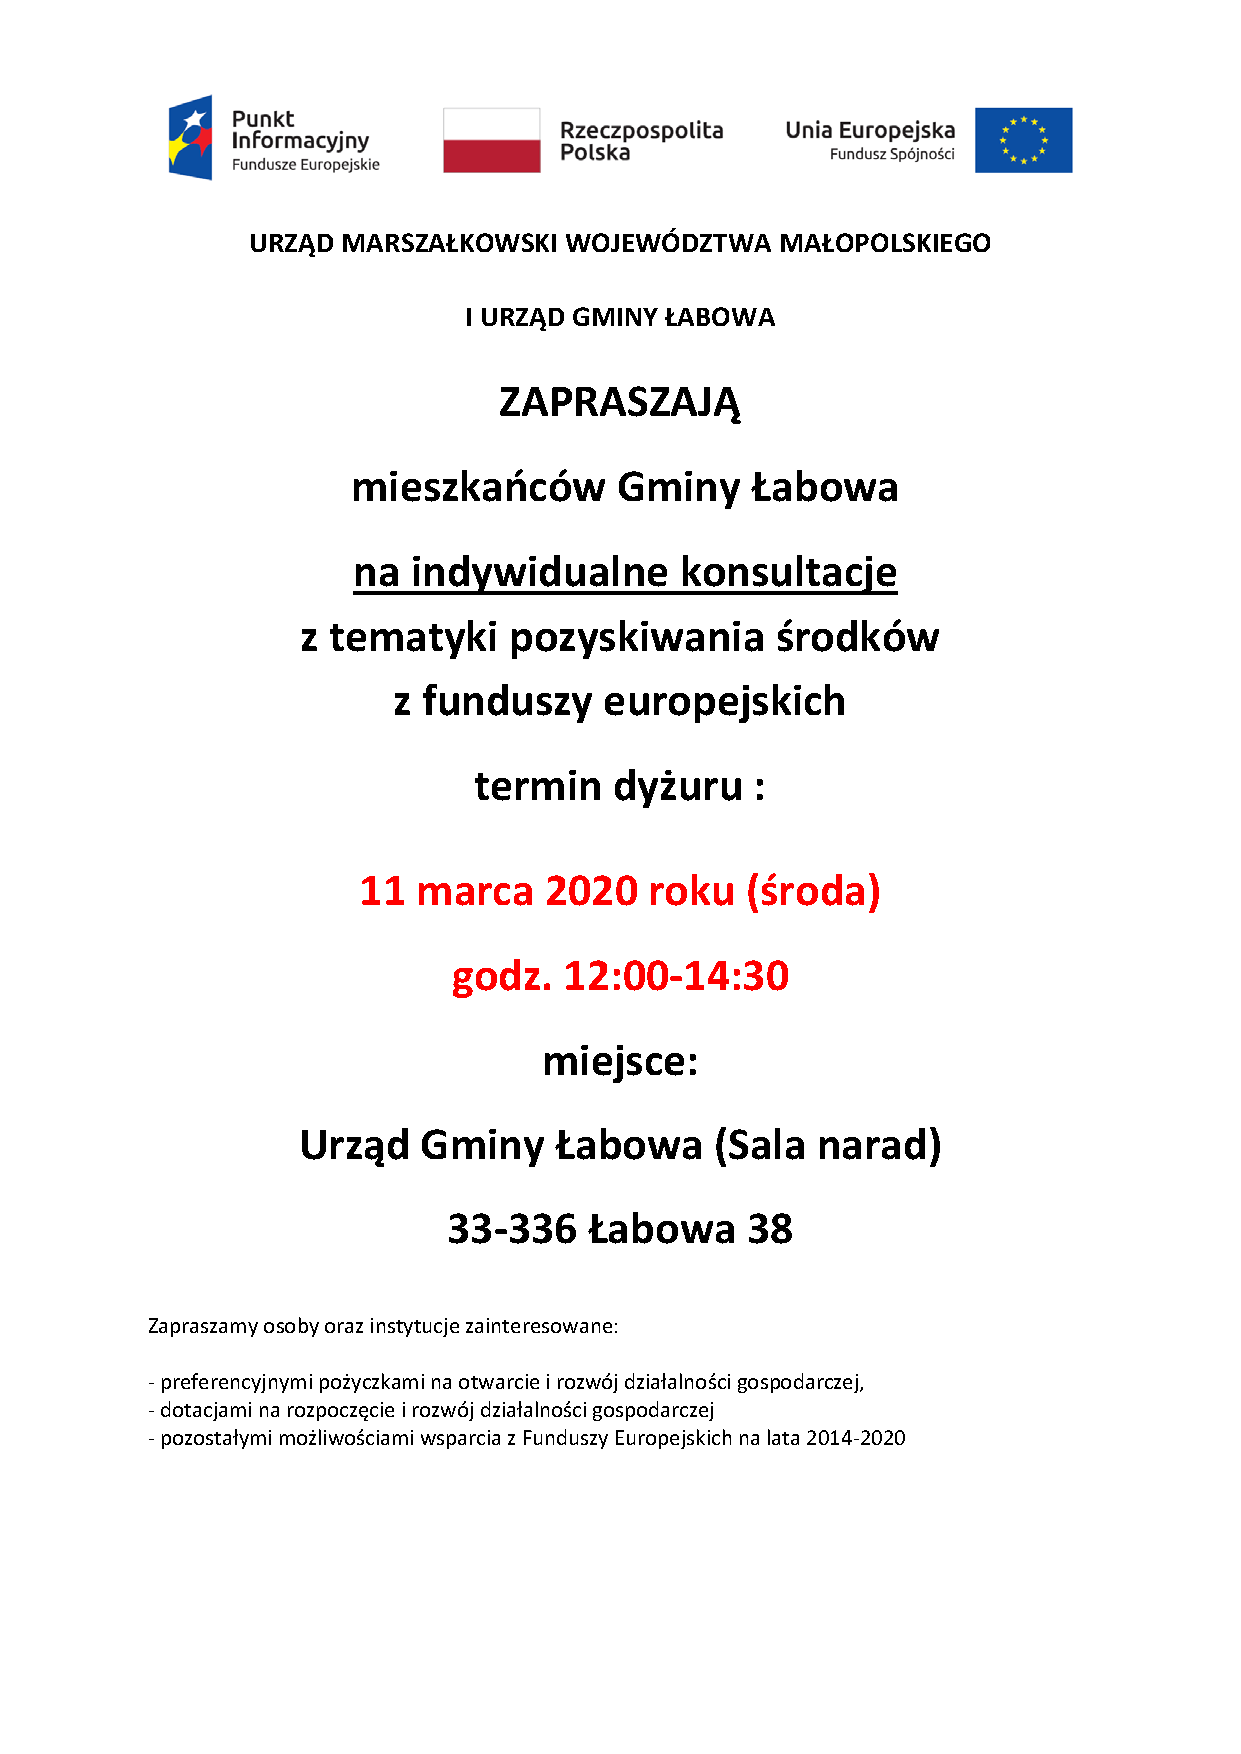 Zaproszenie na indywidualne konsultacje z zakresu pozyskiwania środków europejskich dla mieszkańców Gminy Łabowa